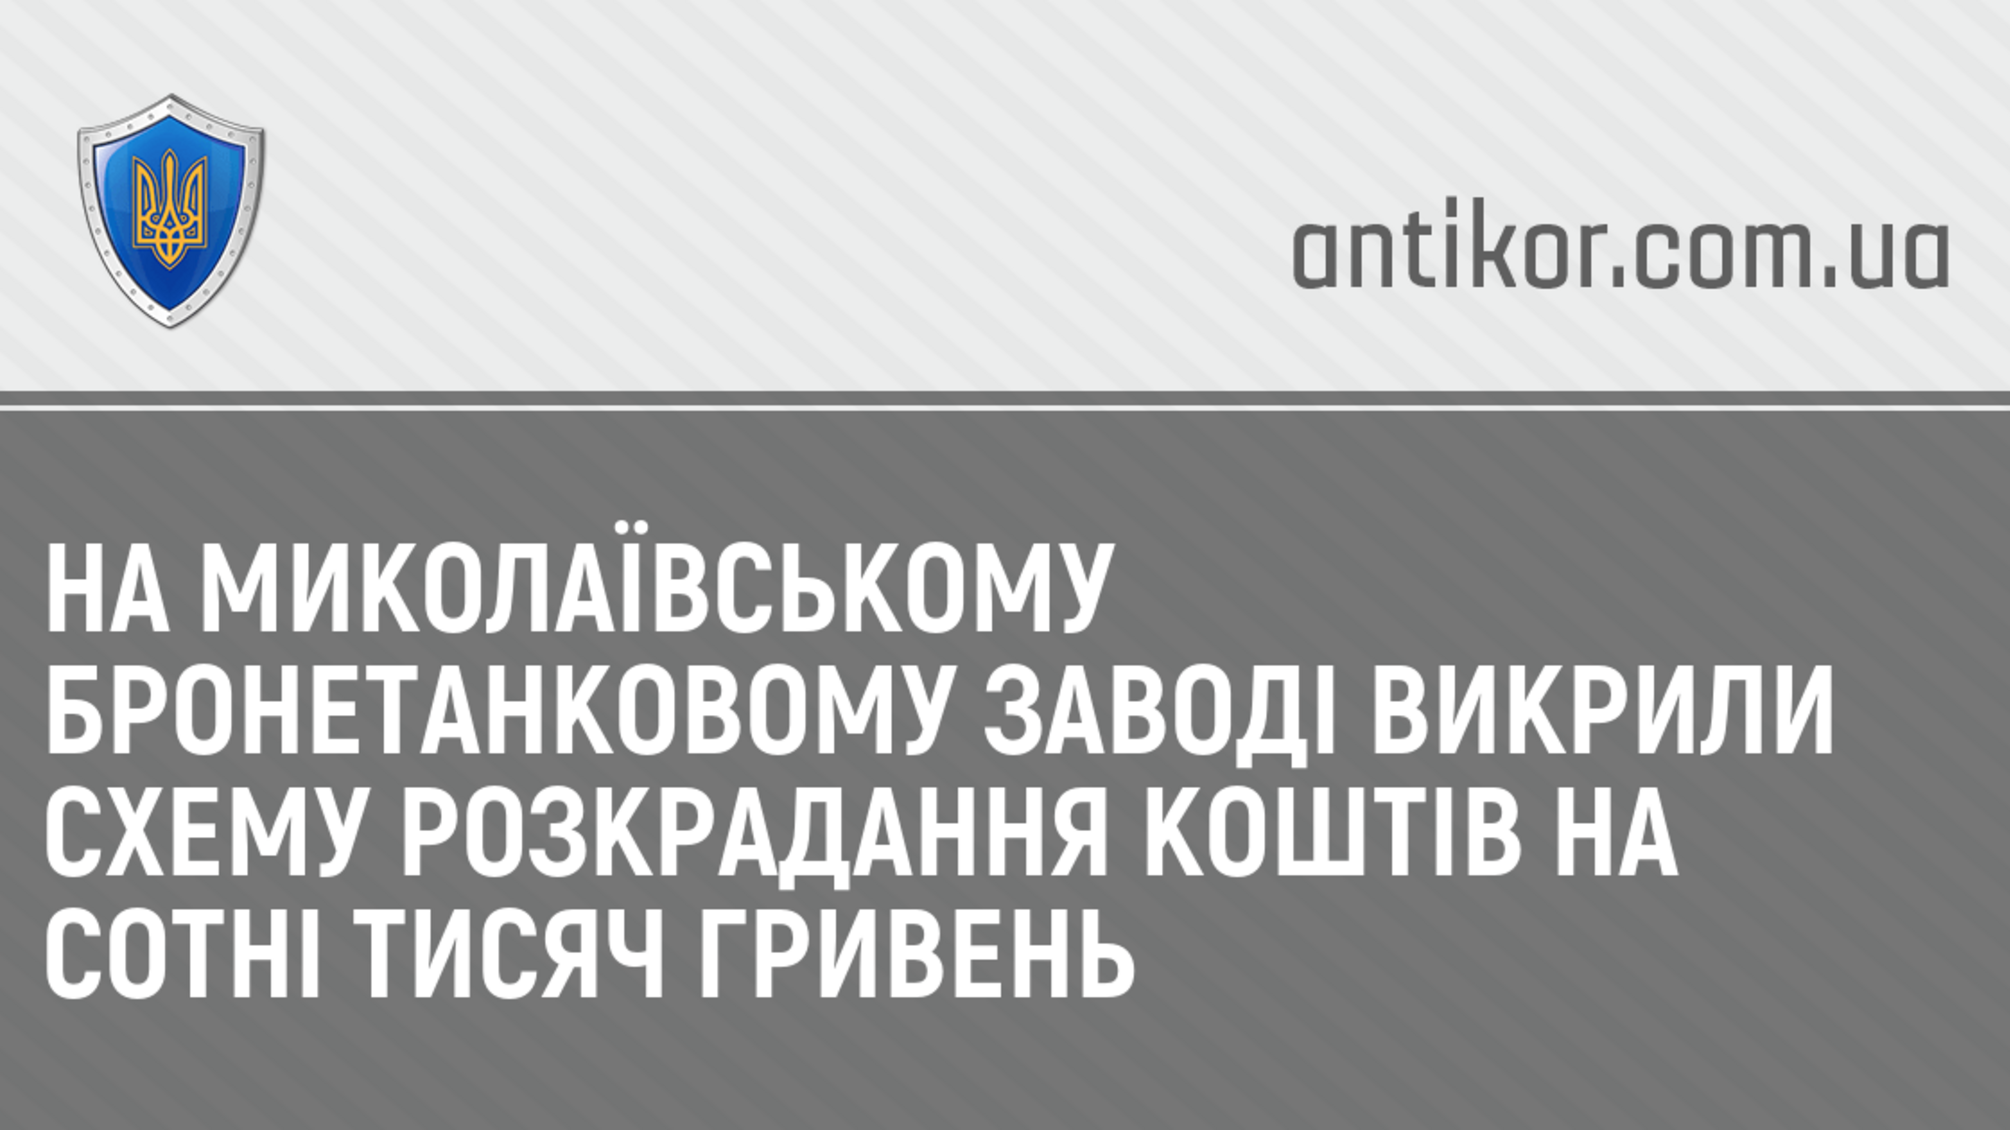 На Миколаївському бронетанковому заводі викрили схему розкрадання коштів на сотні тисяч гривень